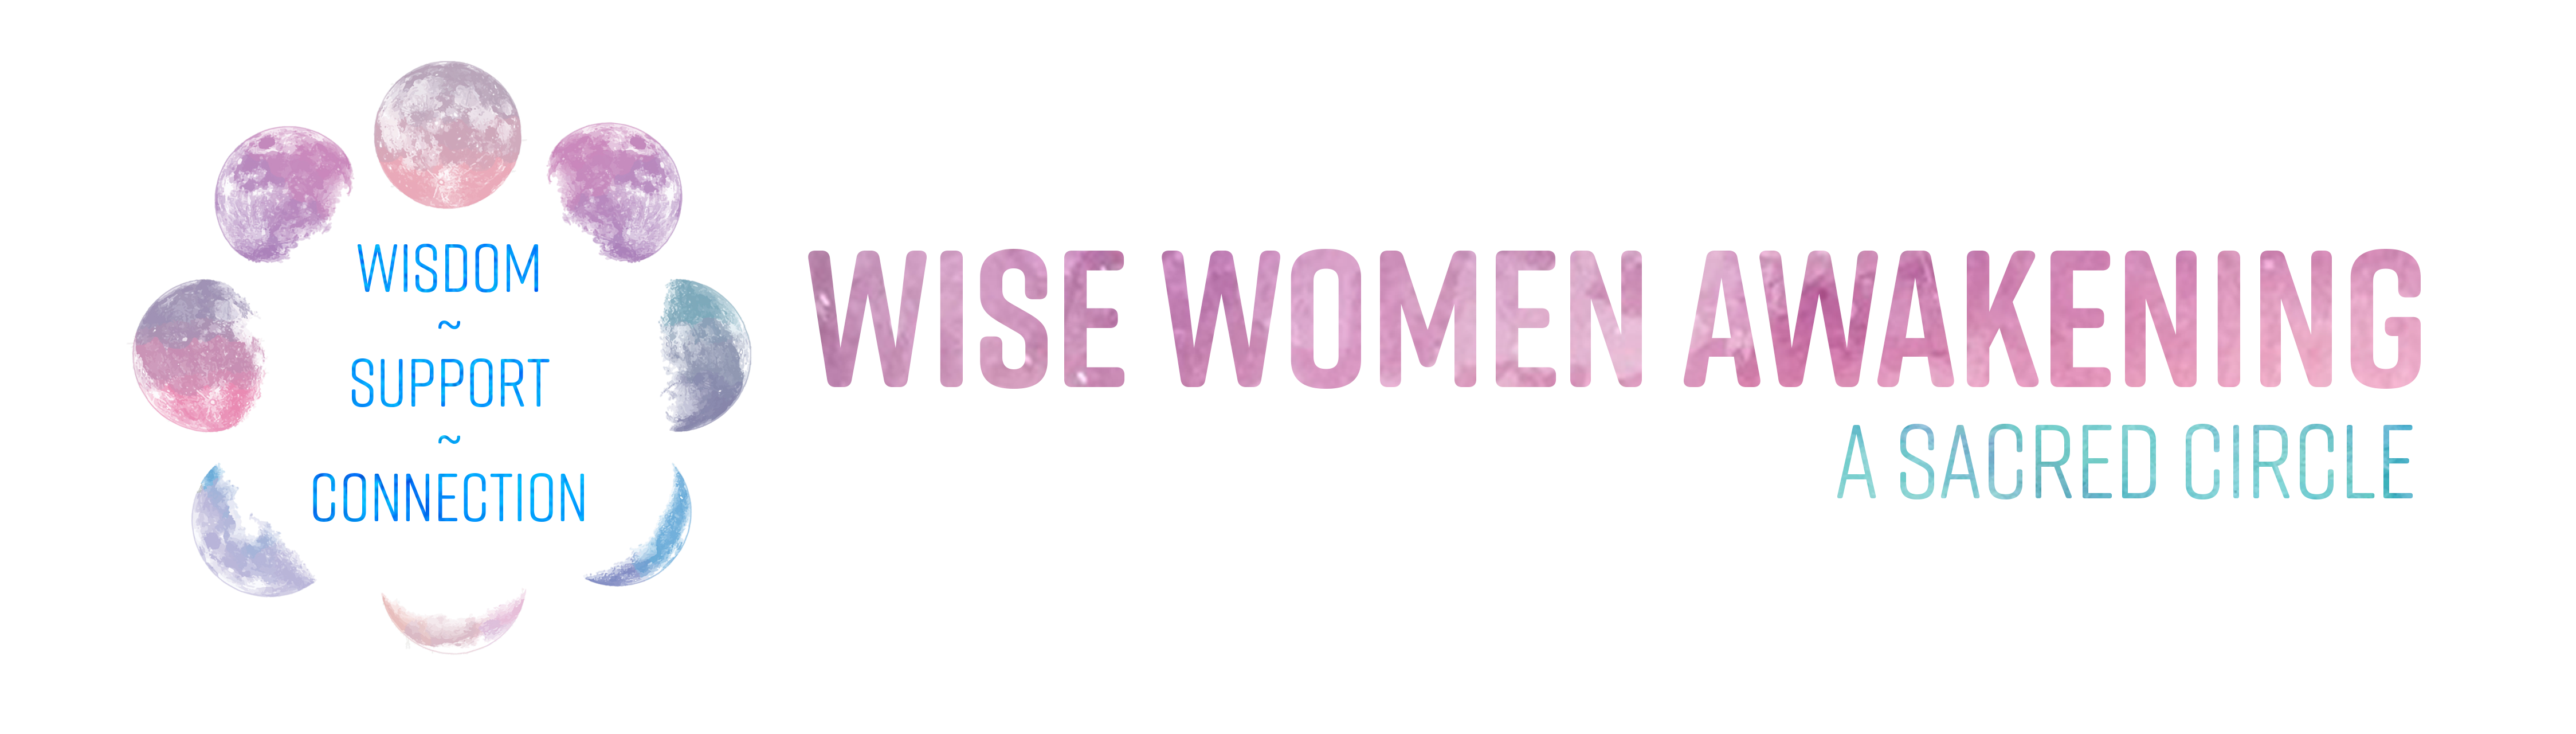 Wise Women Awakening - Womens Circle